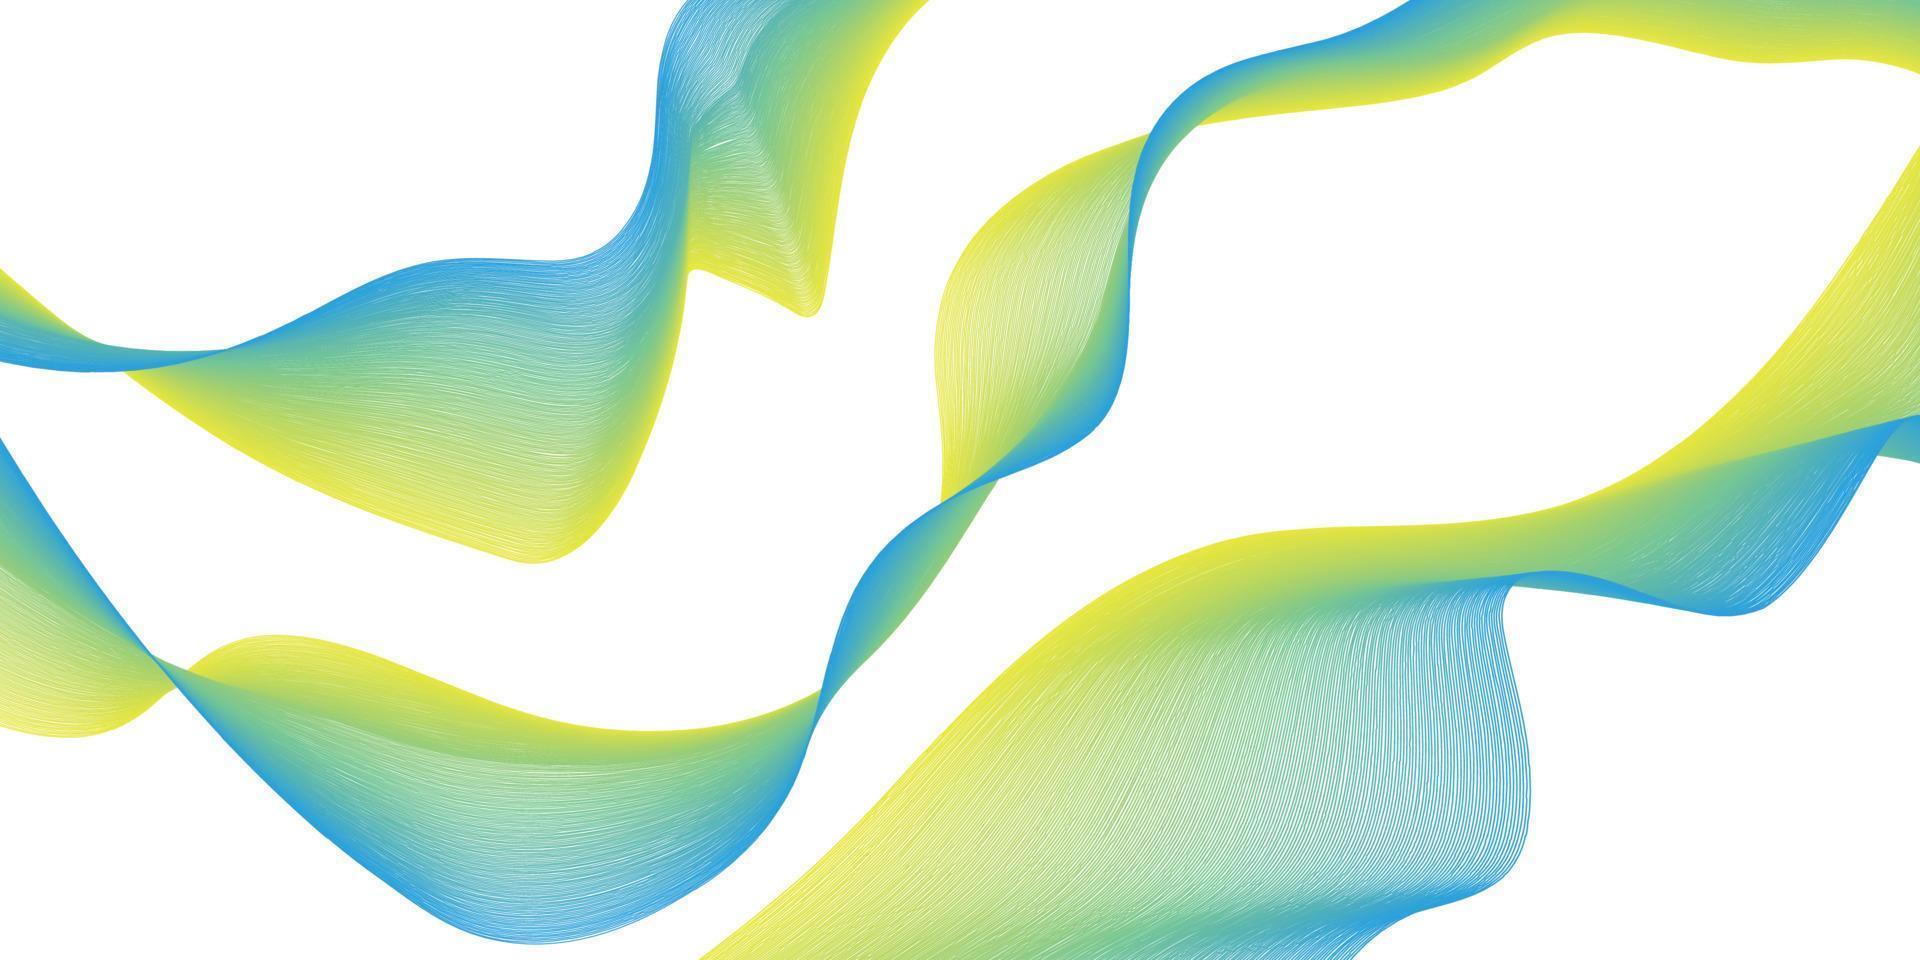 Band mit ukrainischen Flaggenfarben Wellenelement für Design. stilisierte Linie Kunsthintergrund. Vektor-Illustration. Welle mit Linien, die mit dem Mischwerkzeug erstellt wurden. gebogene Wellenlinie, glatter Streifen. vektor